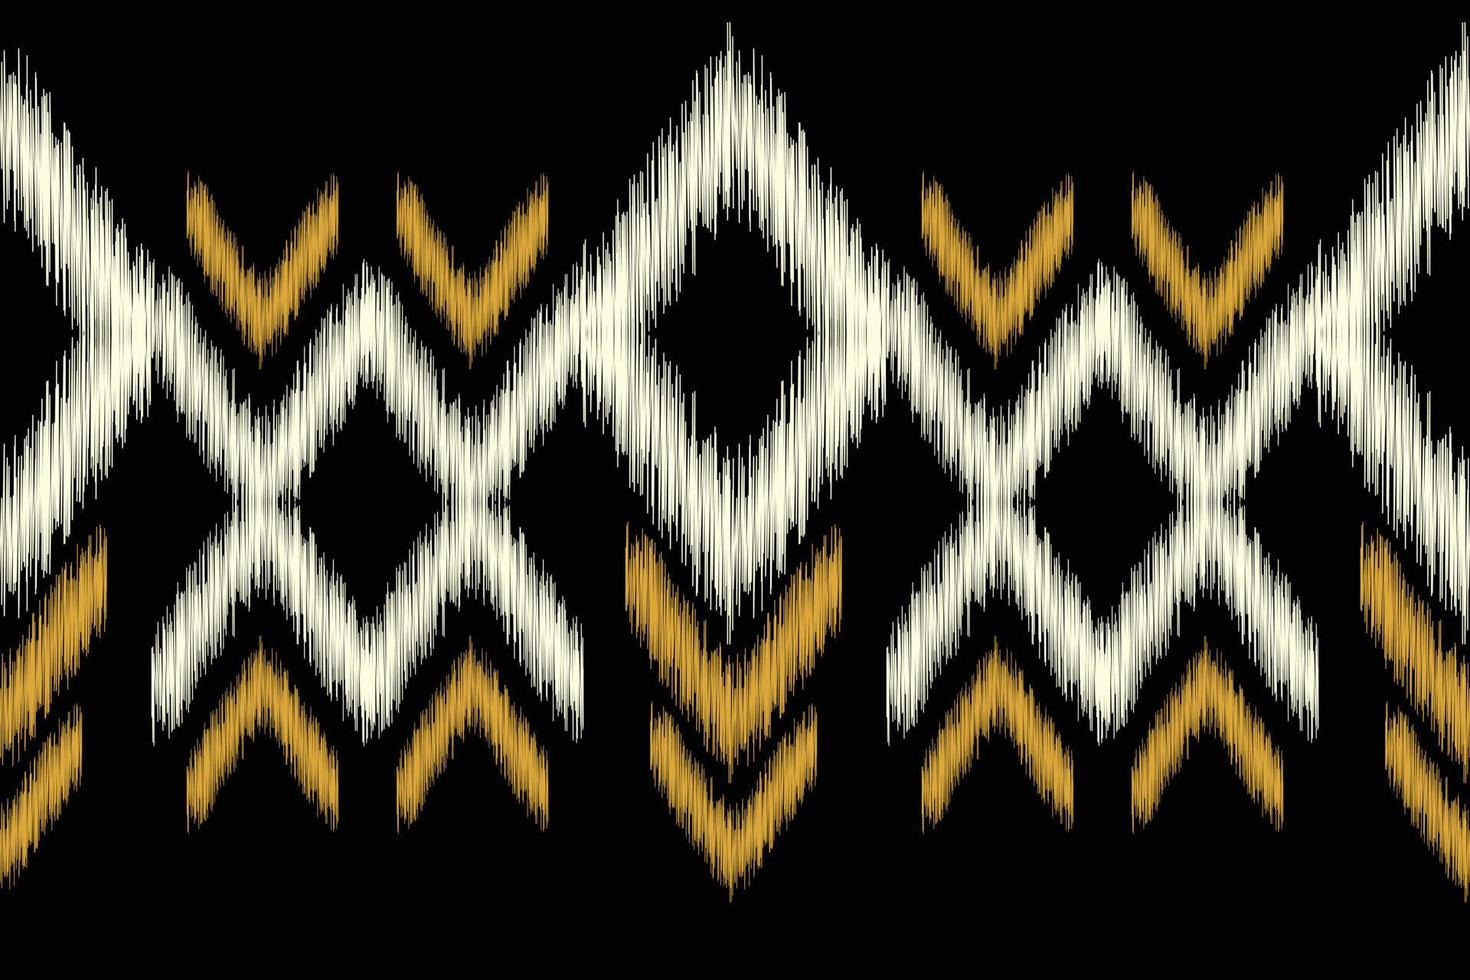 etnisch ikat kleding stof patroon meetkundig stijl.afrikaans ikat borduurwerk etnisch oosters patroon zwart achtergrond. abstract, vector, illustratie.voor textuur, kleding, sjaal, decoratie, tapijt. vector